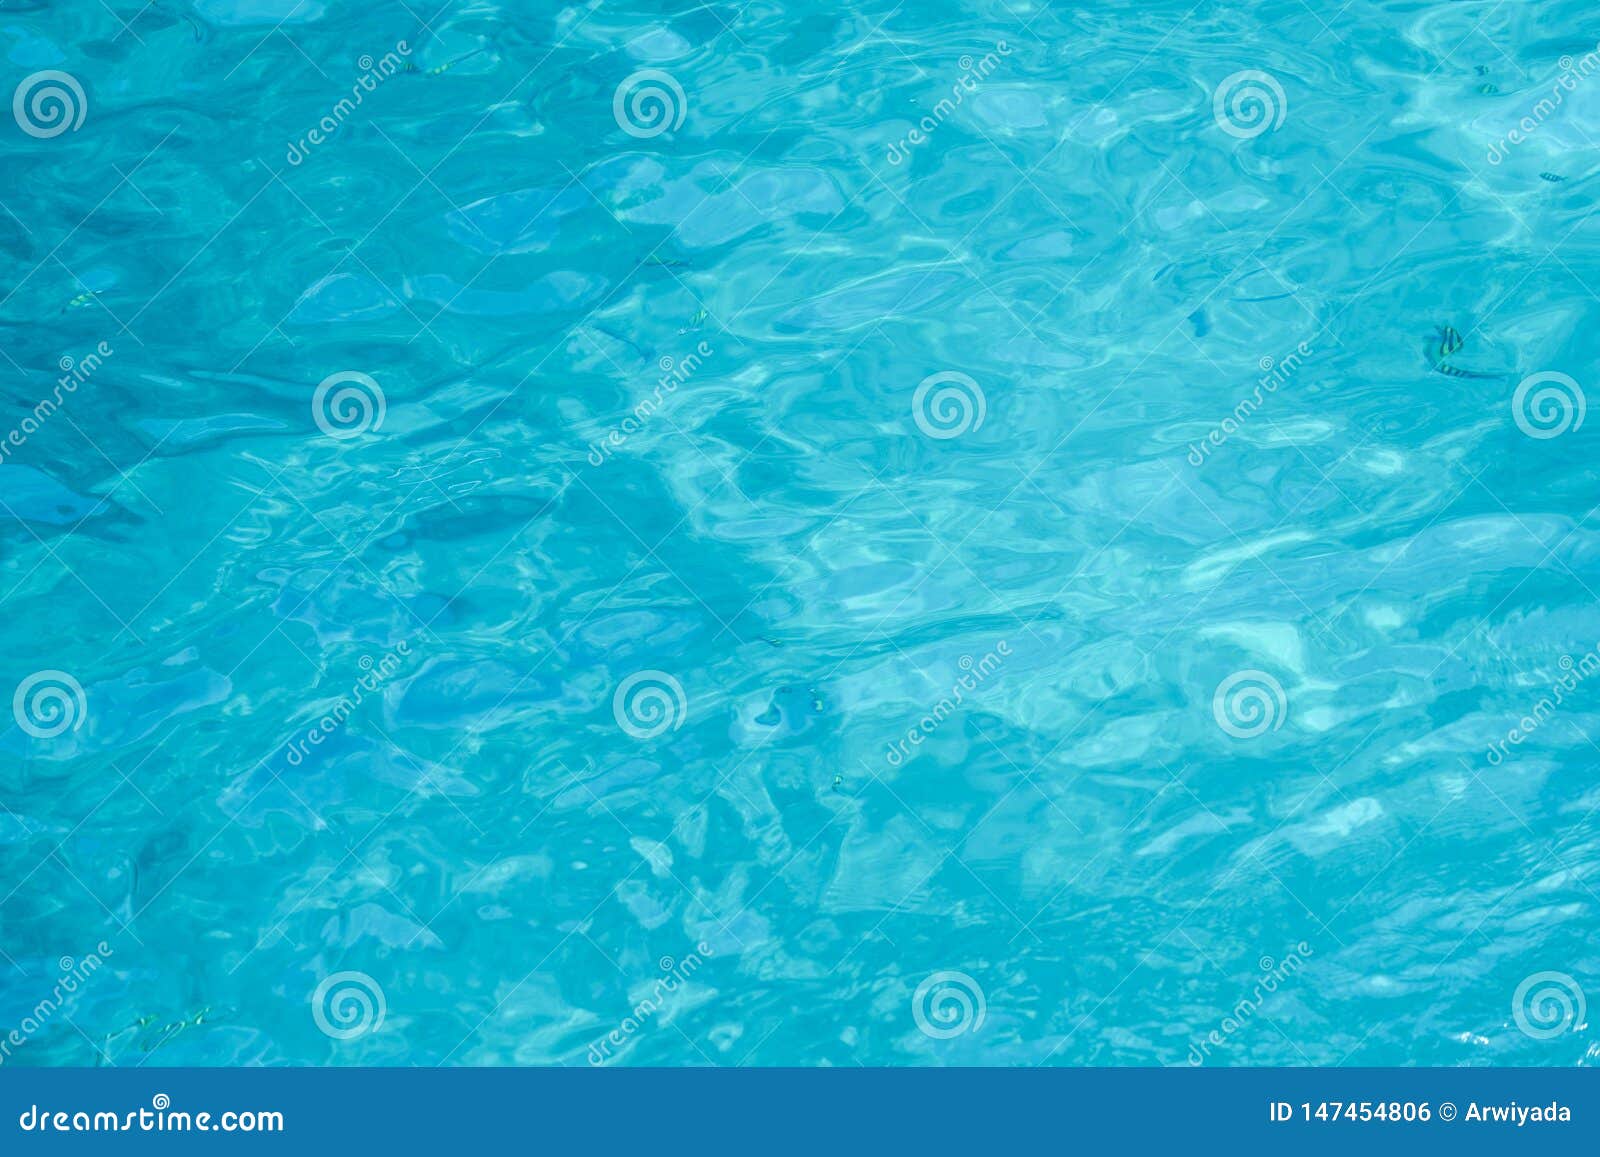 水色蓝色和白海水背景库存照片 图片包括有水色蓝色和白海水背景